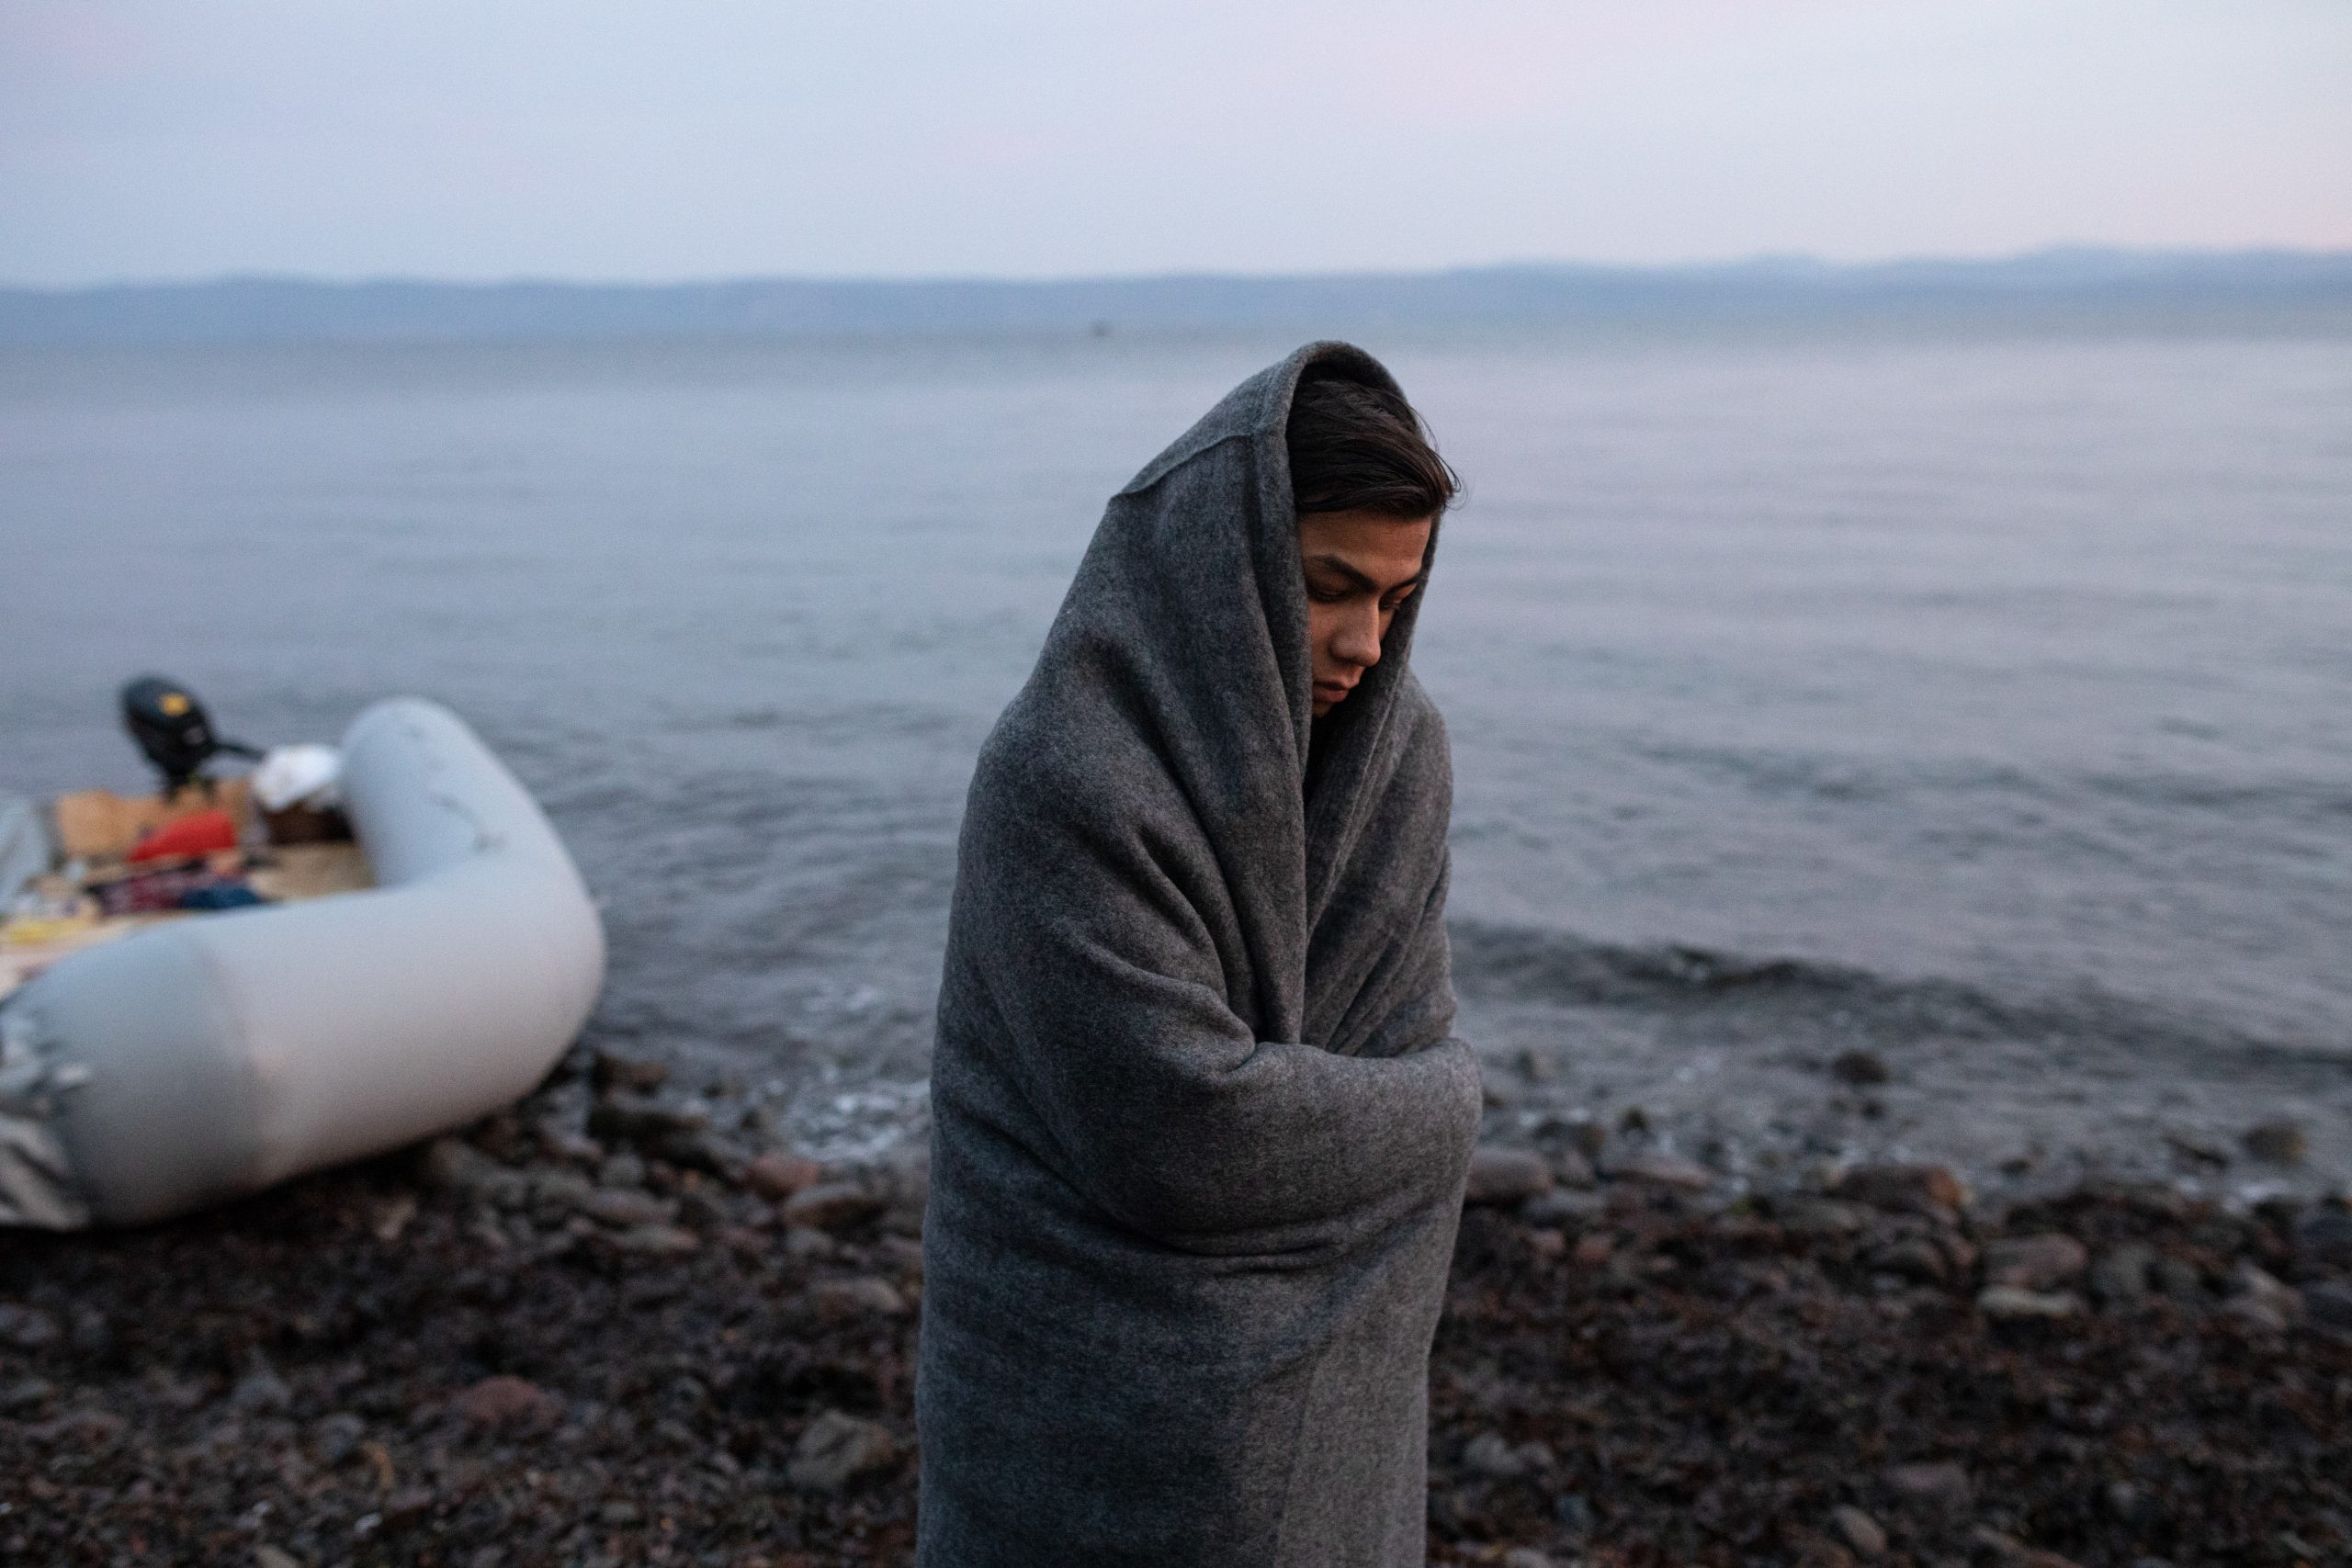 Δημοσίευμα του BBC κάνει λόγο για «pushbacks» μεταναστών από την Ελλάδα